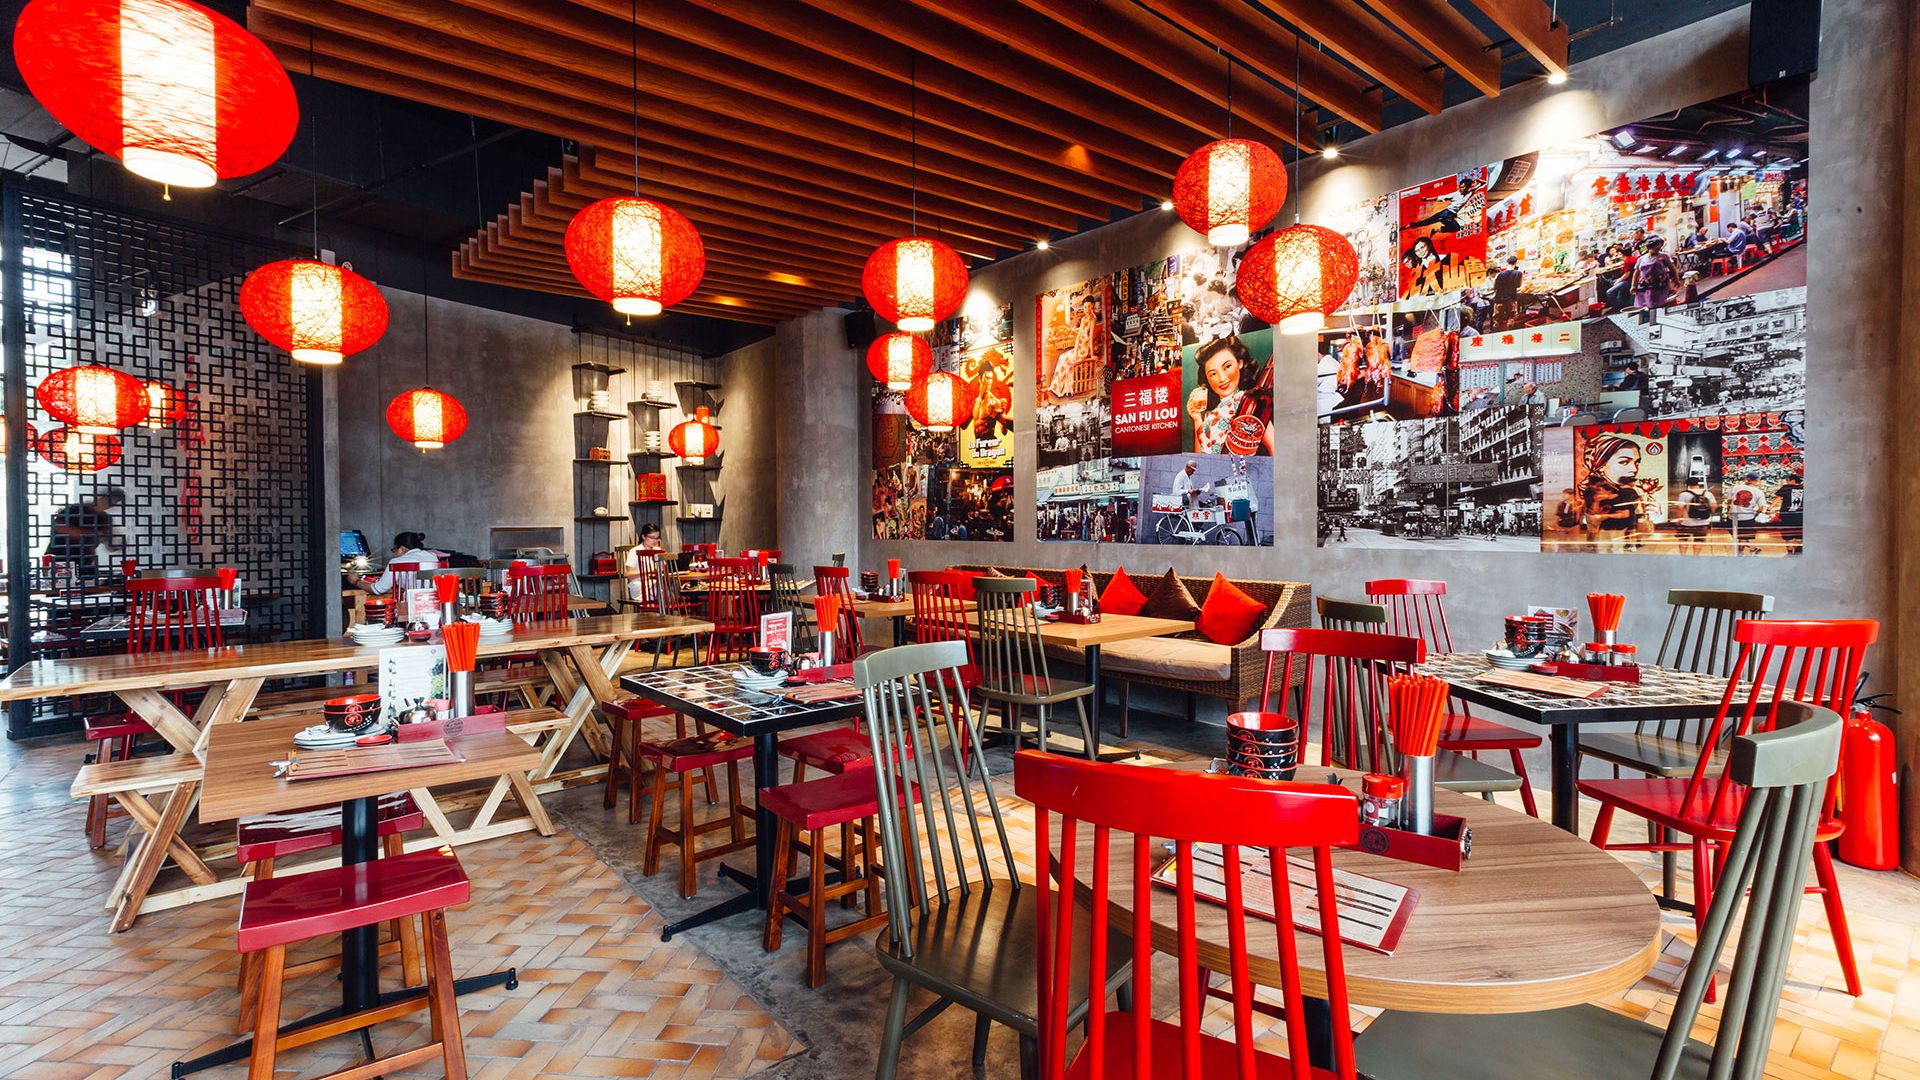 Nhà hàng San Fu Lou với không gian ấm cúng